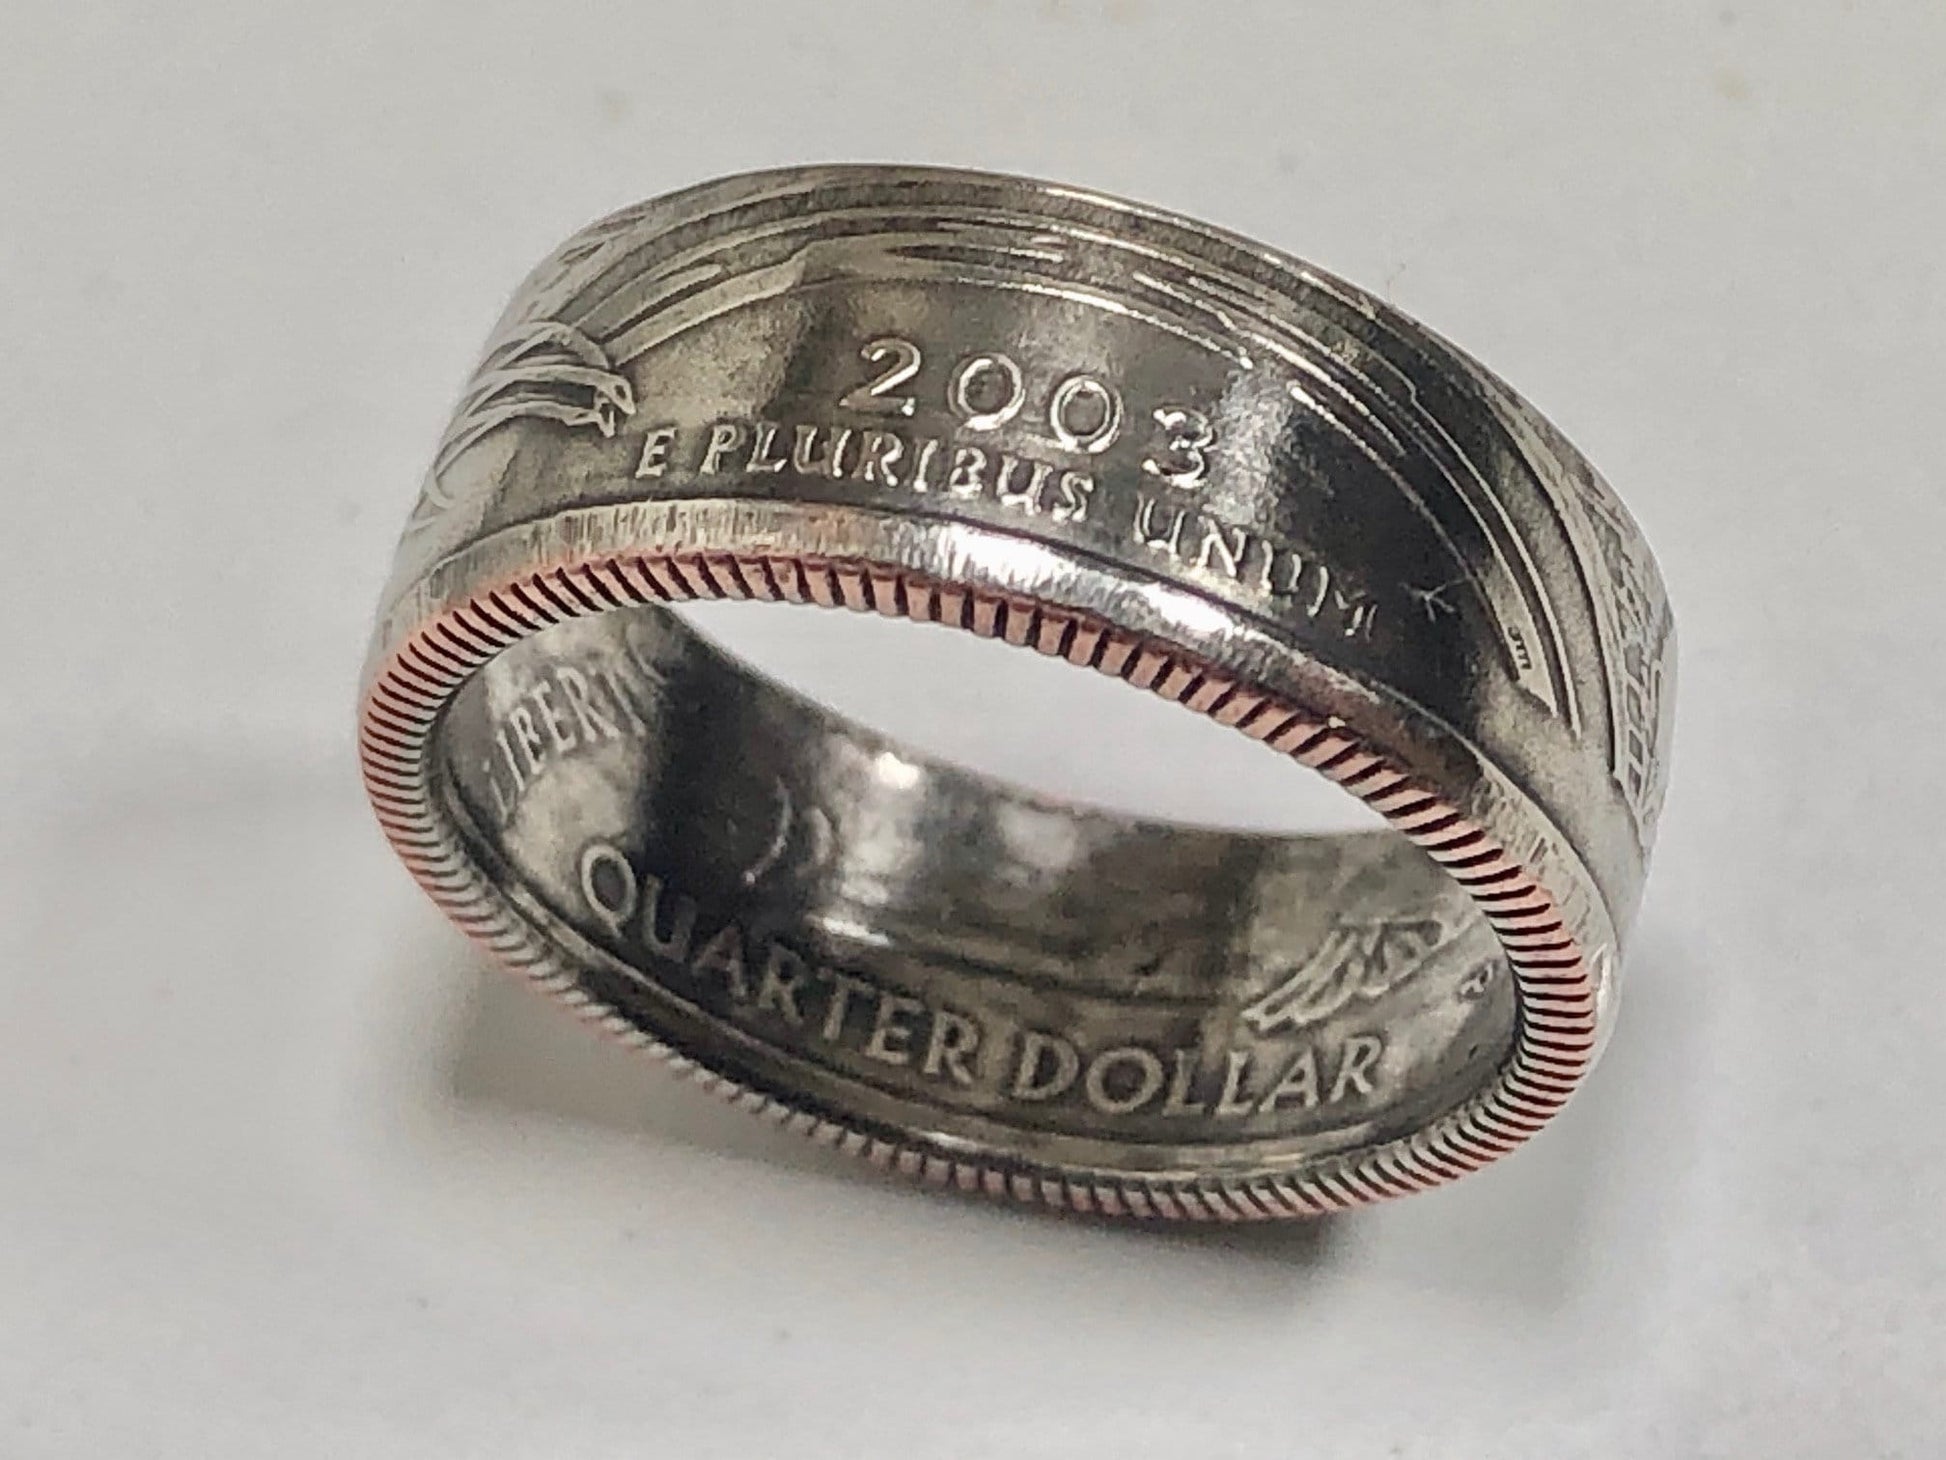 Arkansas Ring State Quarter Coin Ring HandMade